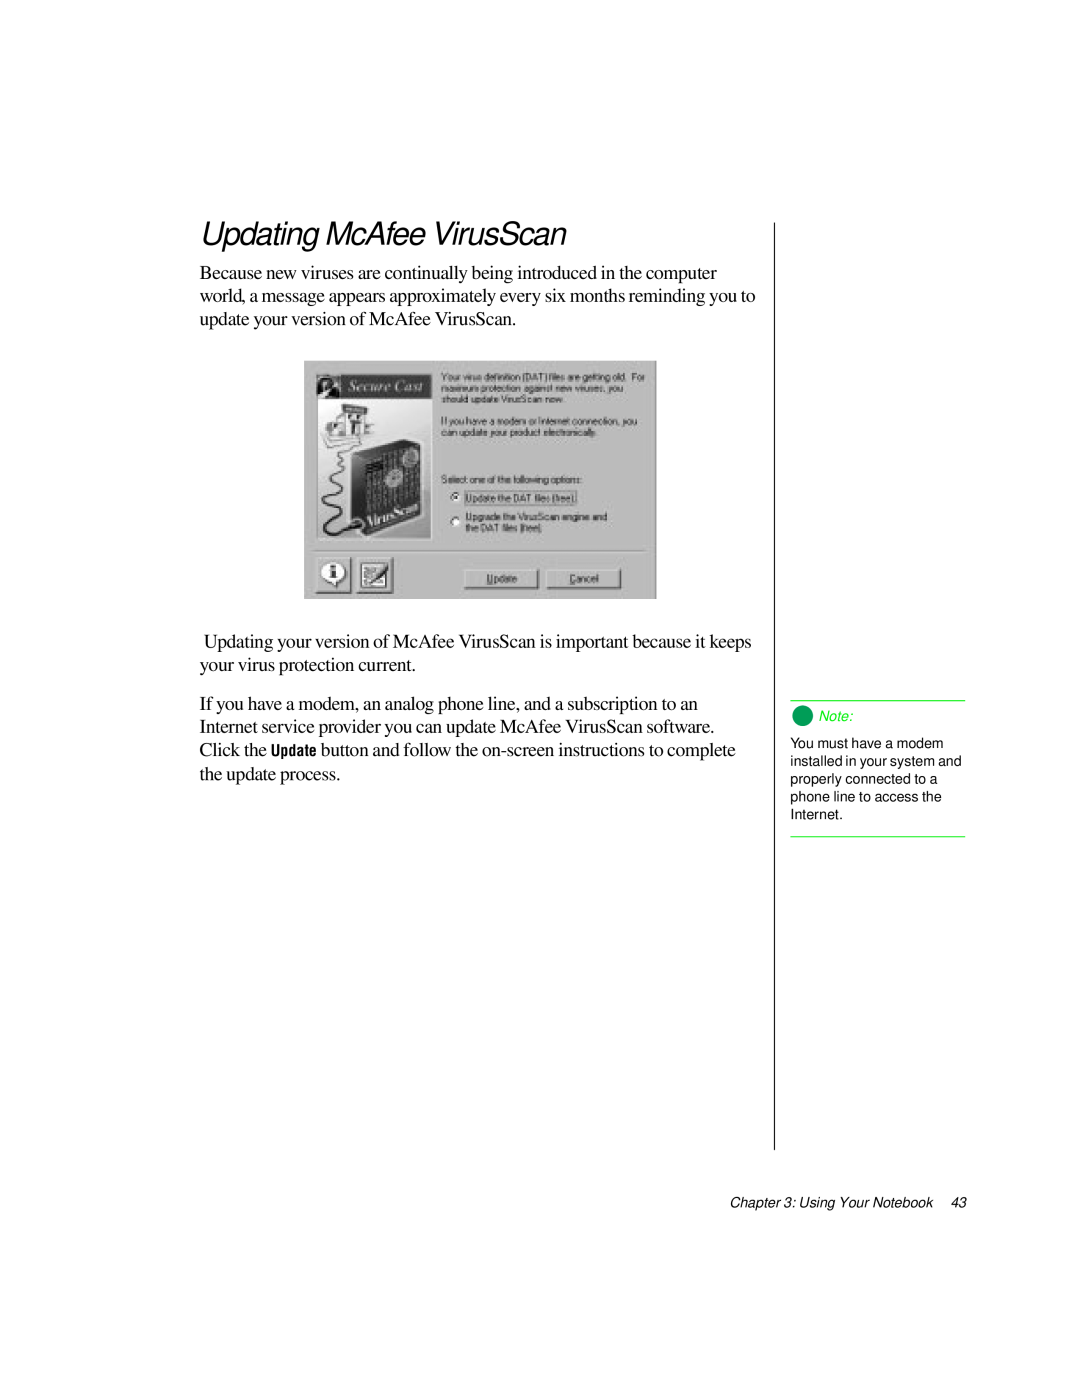 Gateway TM 5150 manual Updating McAfee VirusScan 